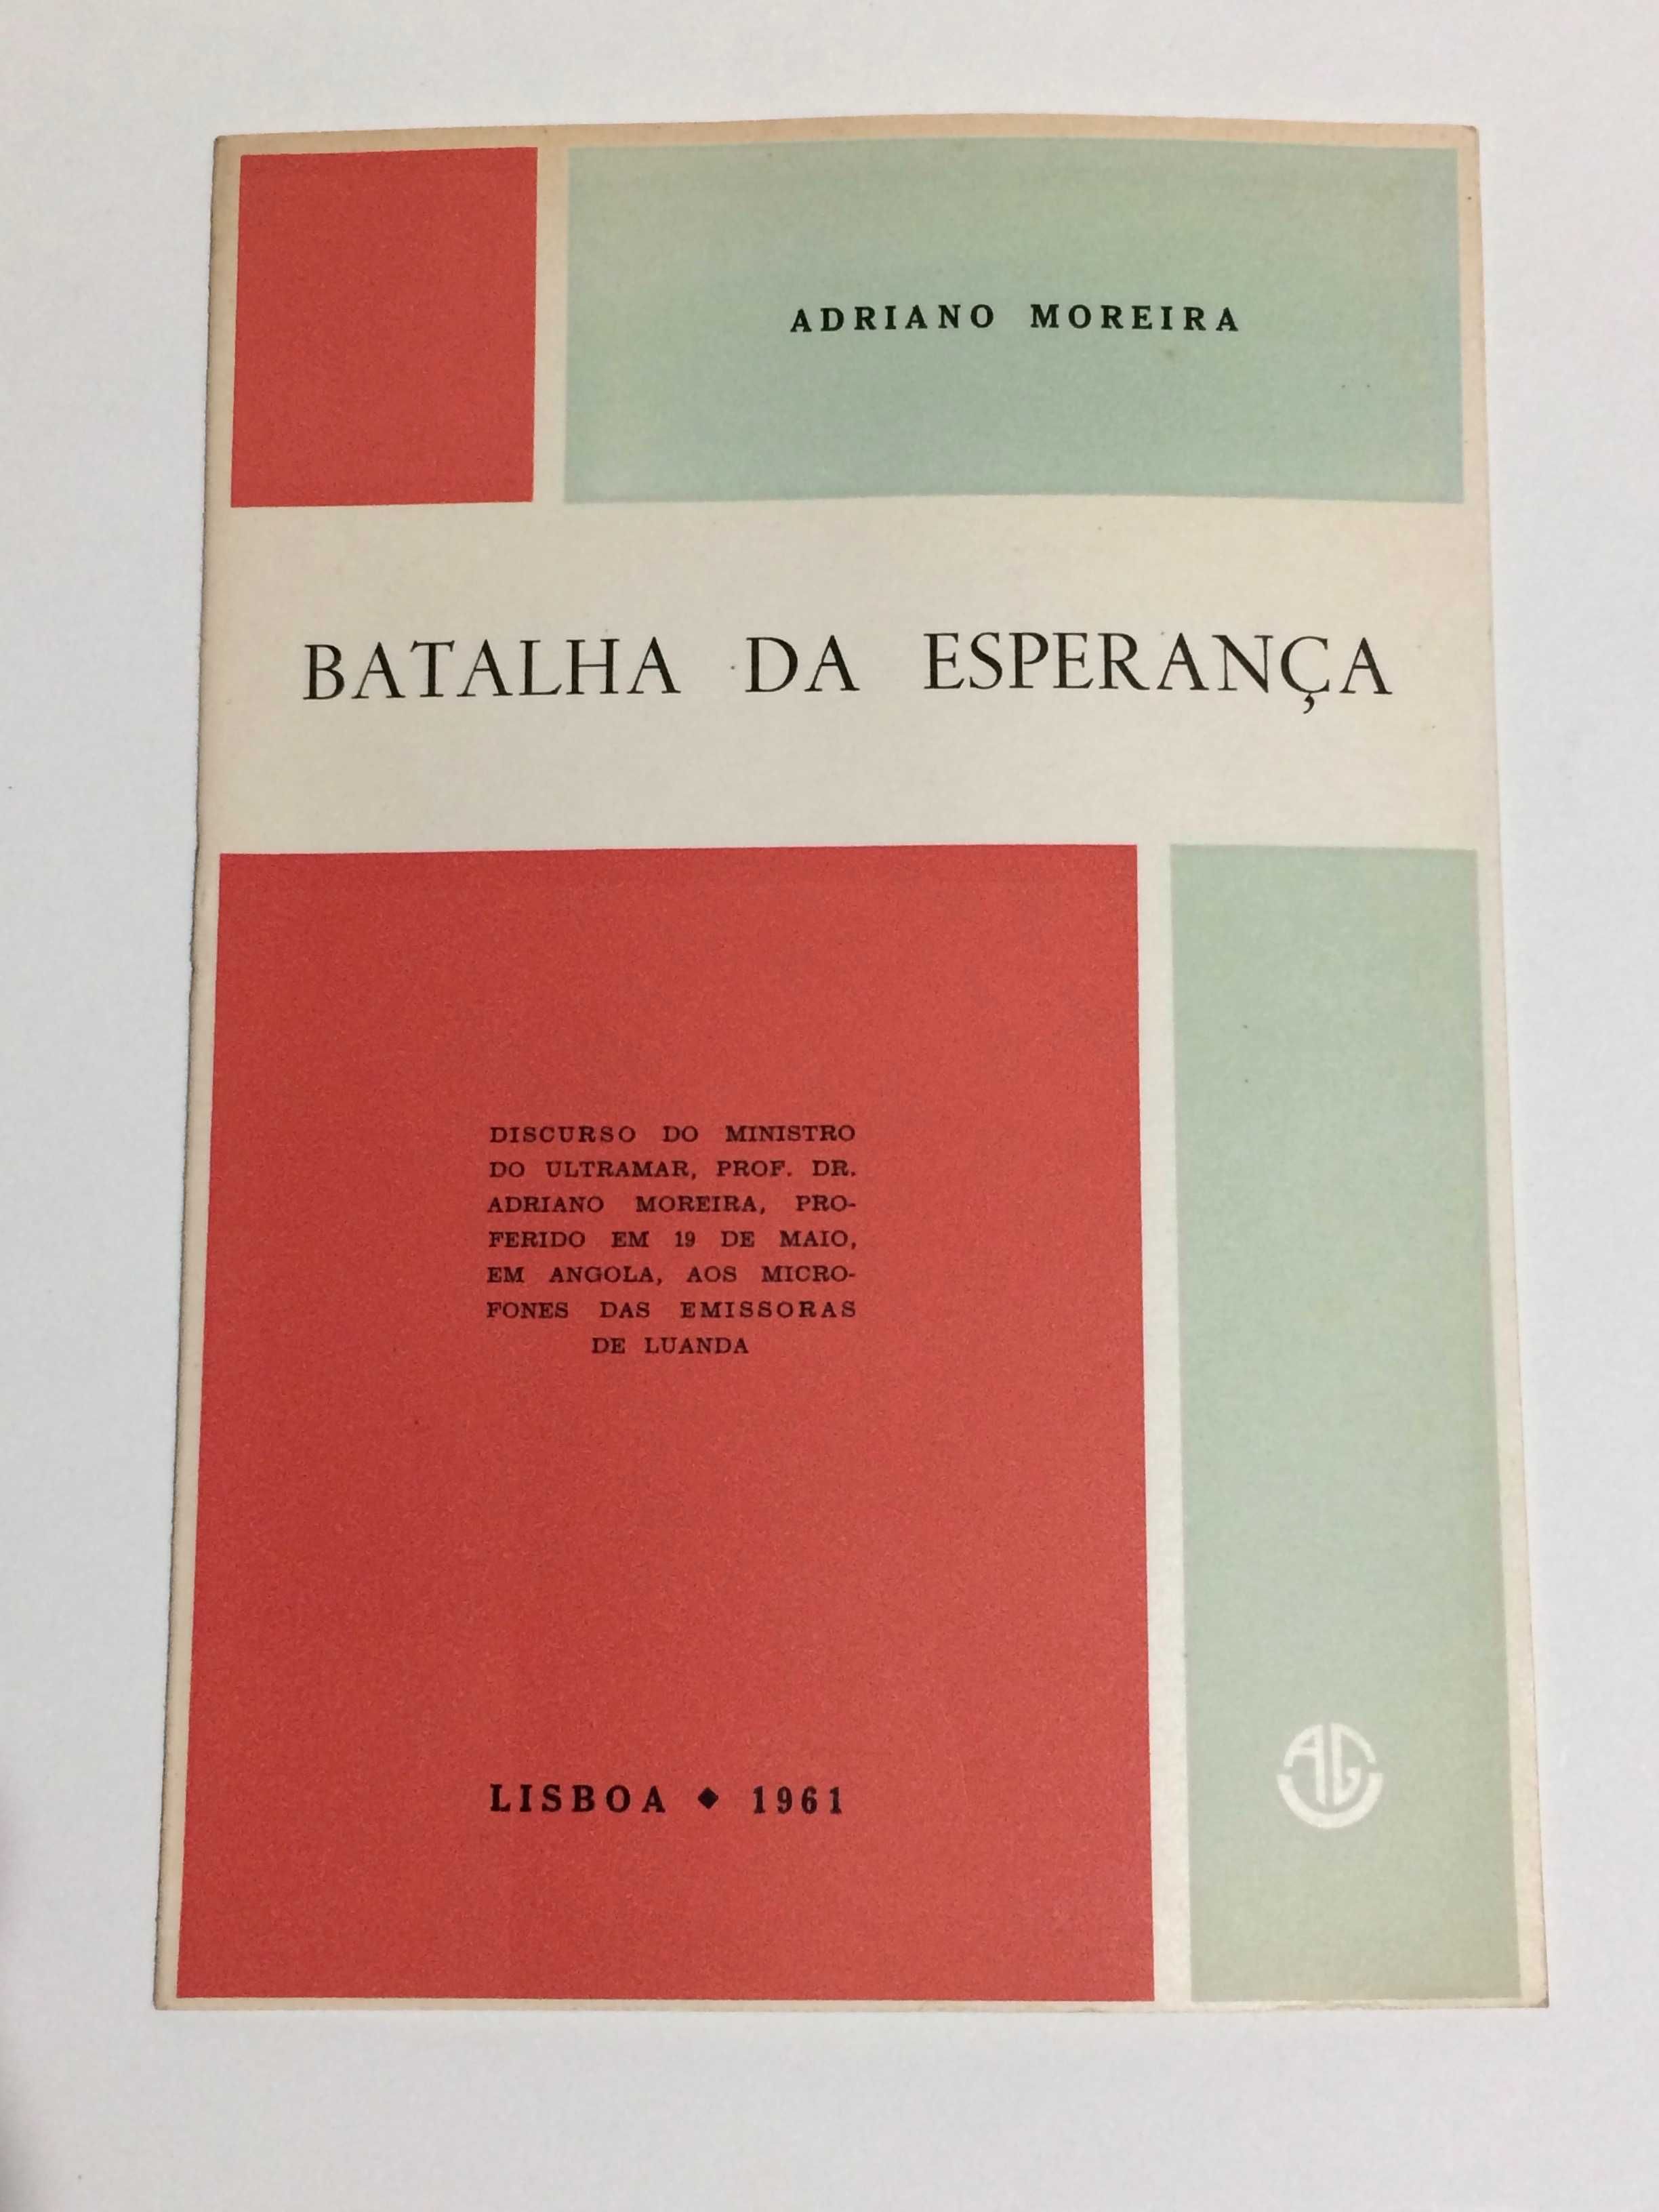 Adriano Moreira – Discursos 1961/1962